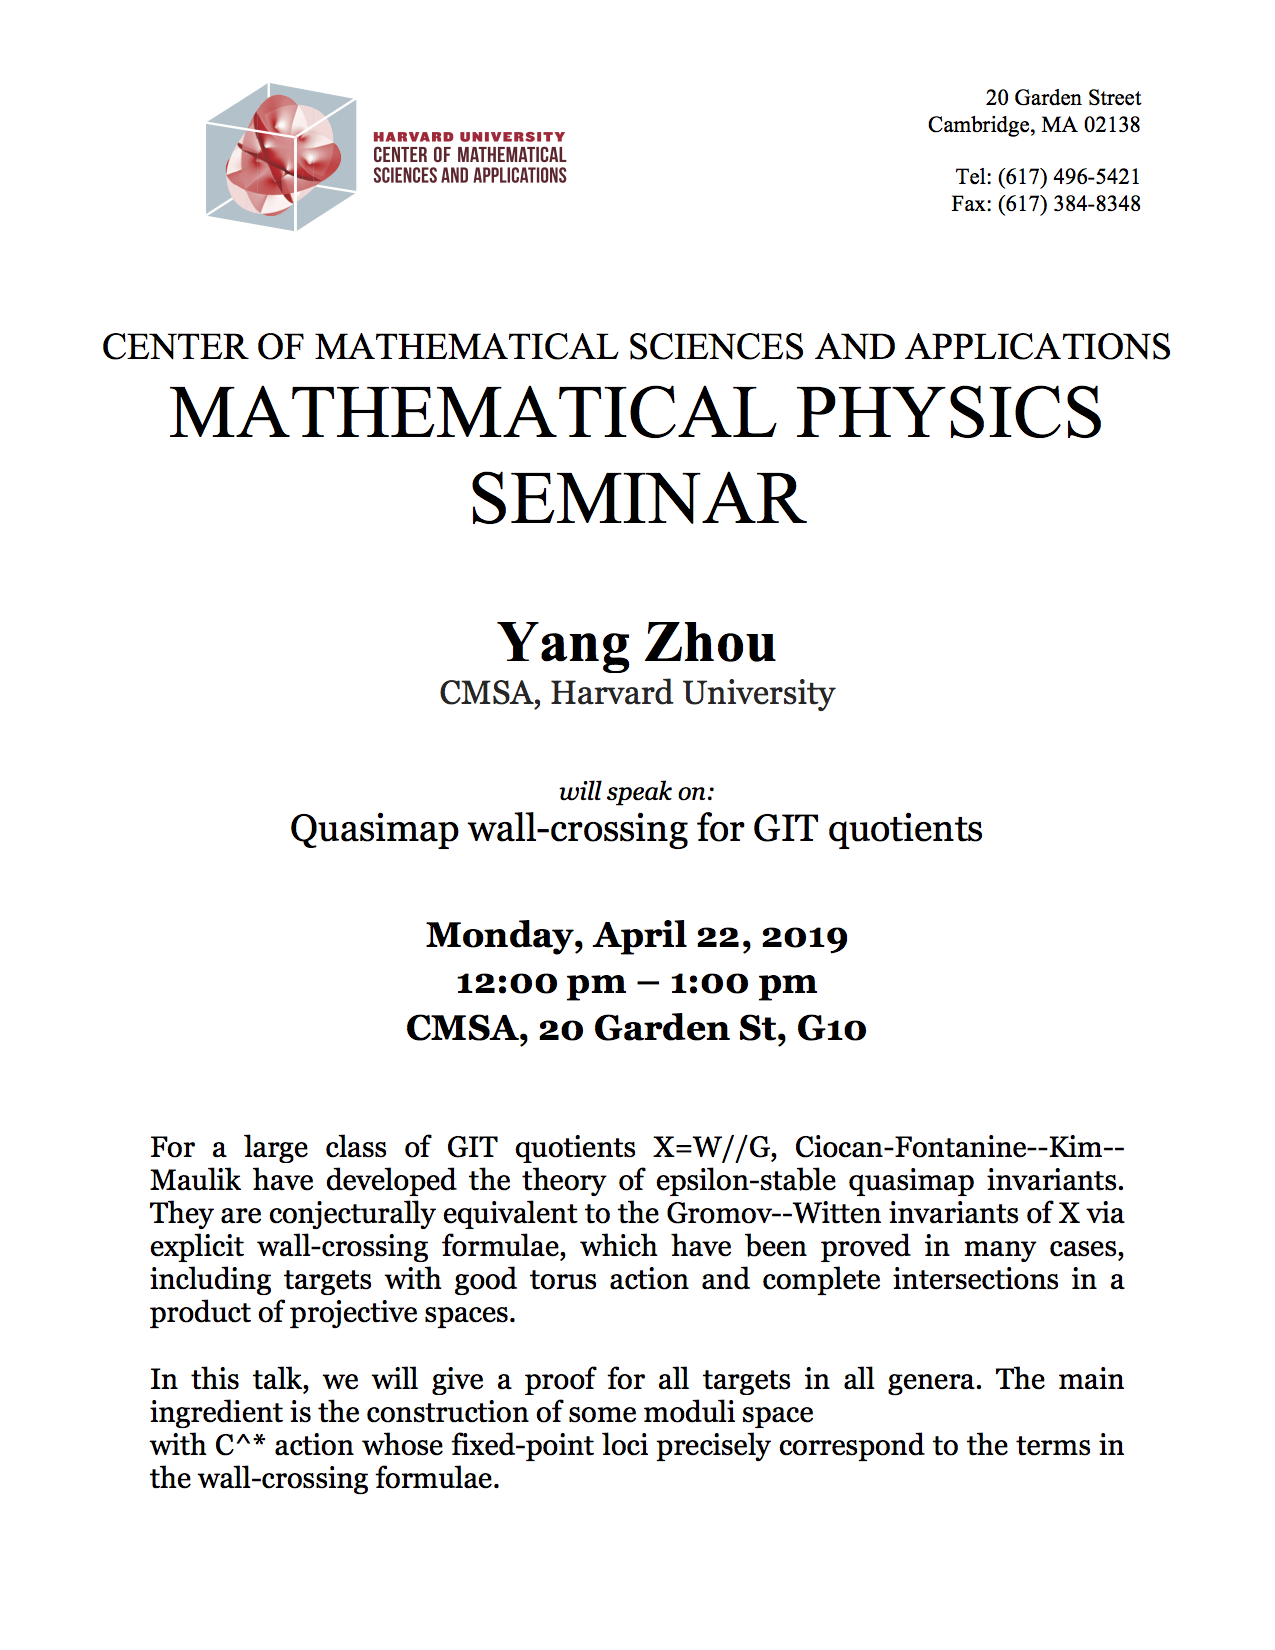 4/22/2019 Math Physics Seminar